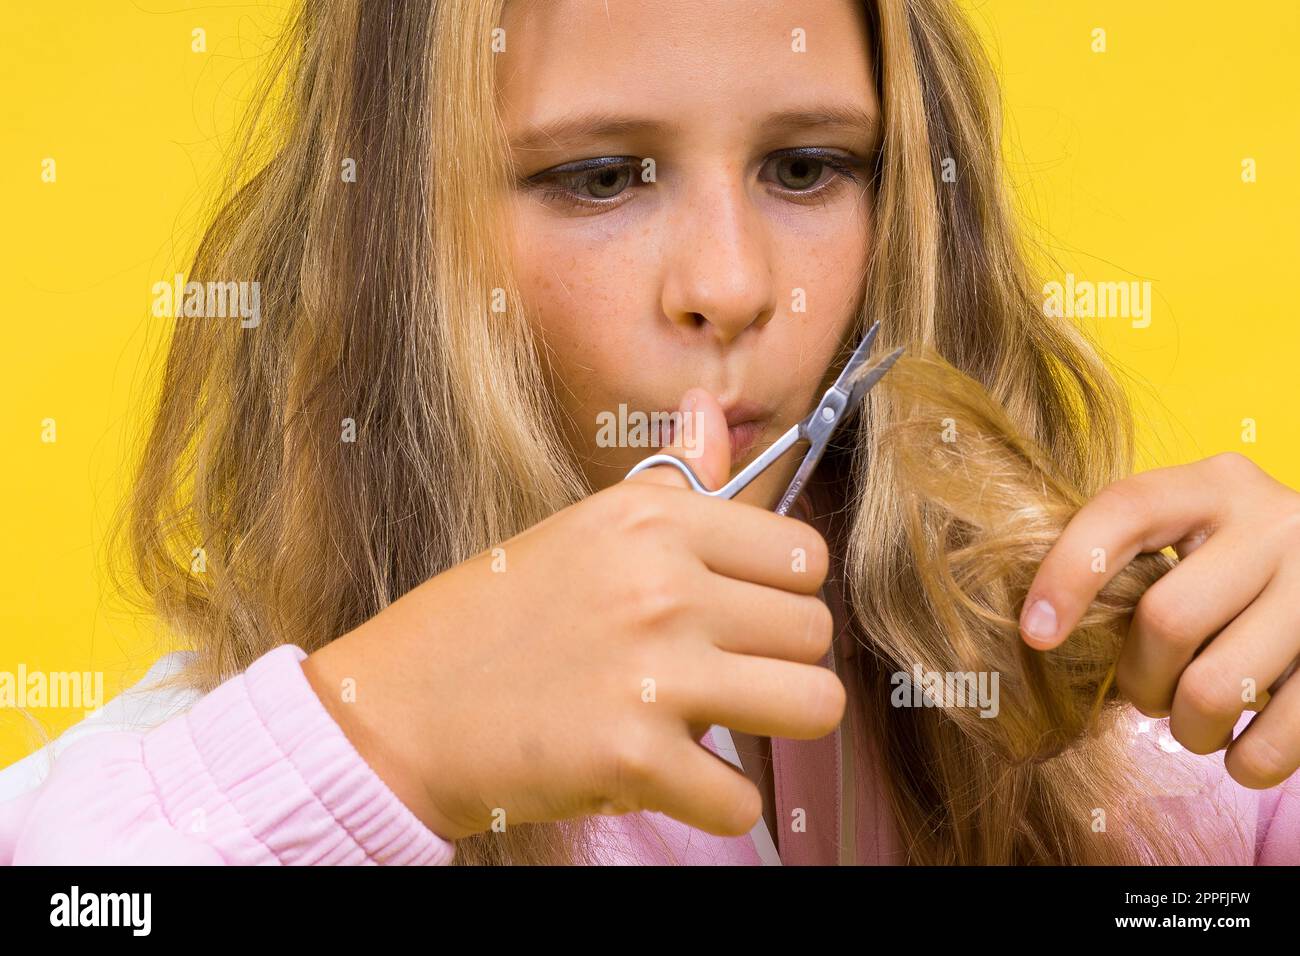 Bambino adorabile ragazza parrucchiere taglio capelli biondi lunghi con forbici metalliche sul giallo Foto Stock